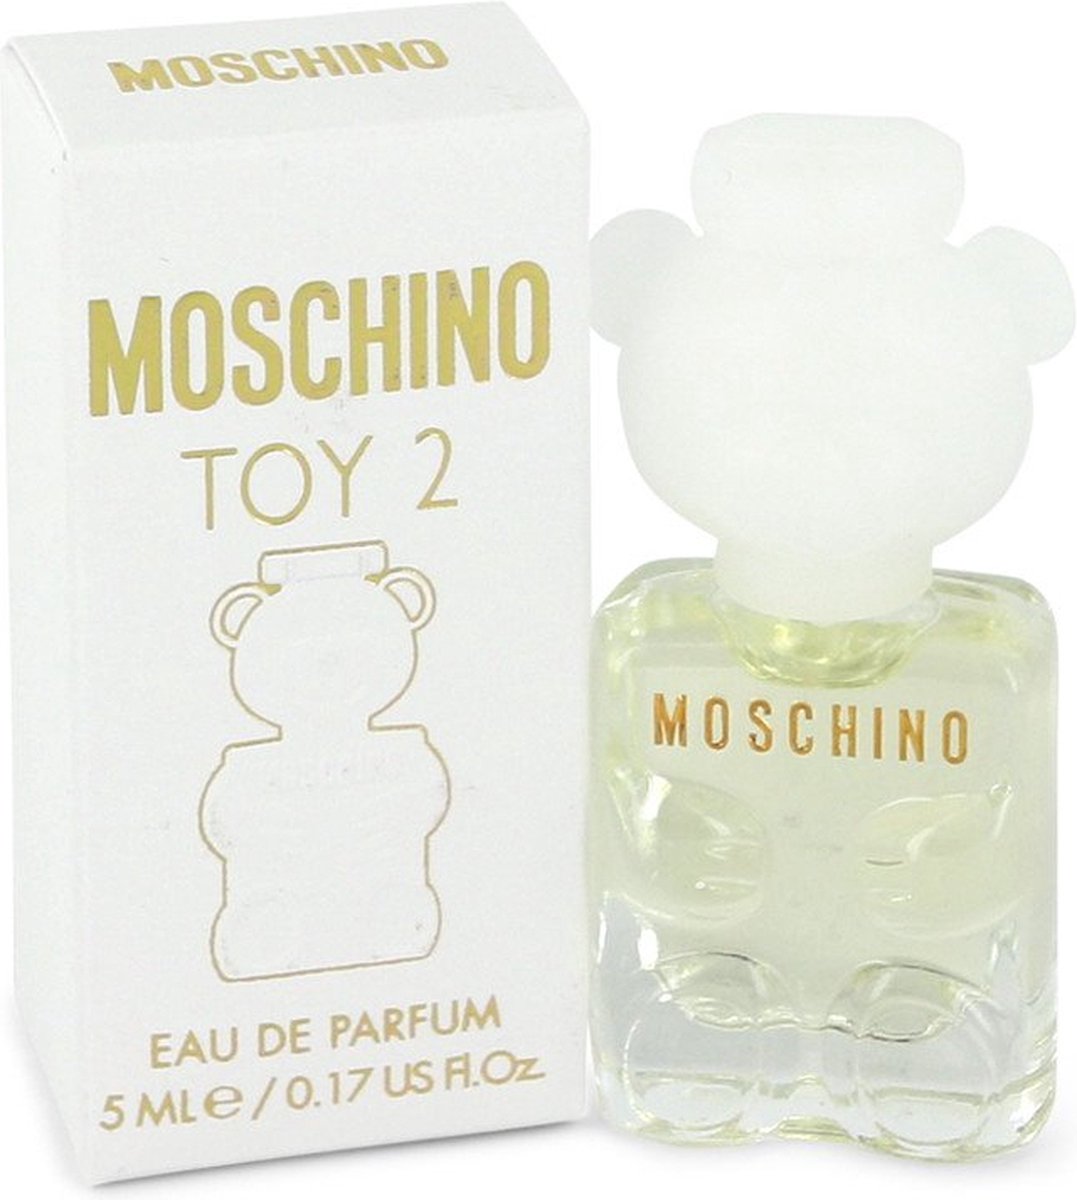 Moschino Toy 2 by Moschino 5 ml - Mini EDP